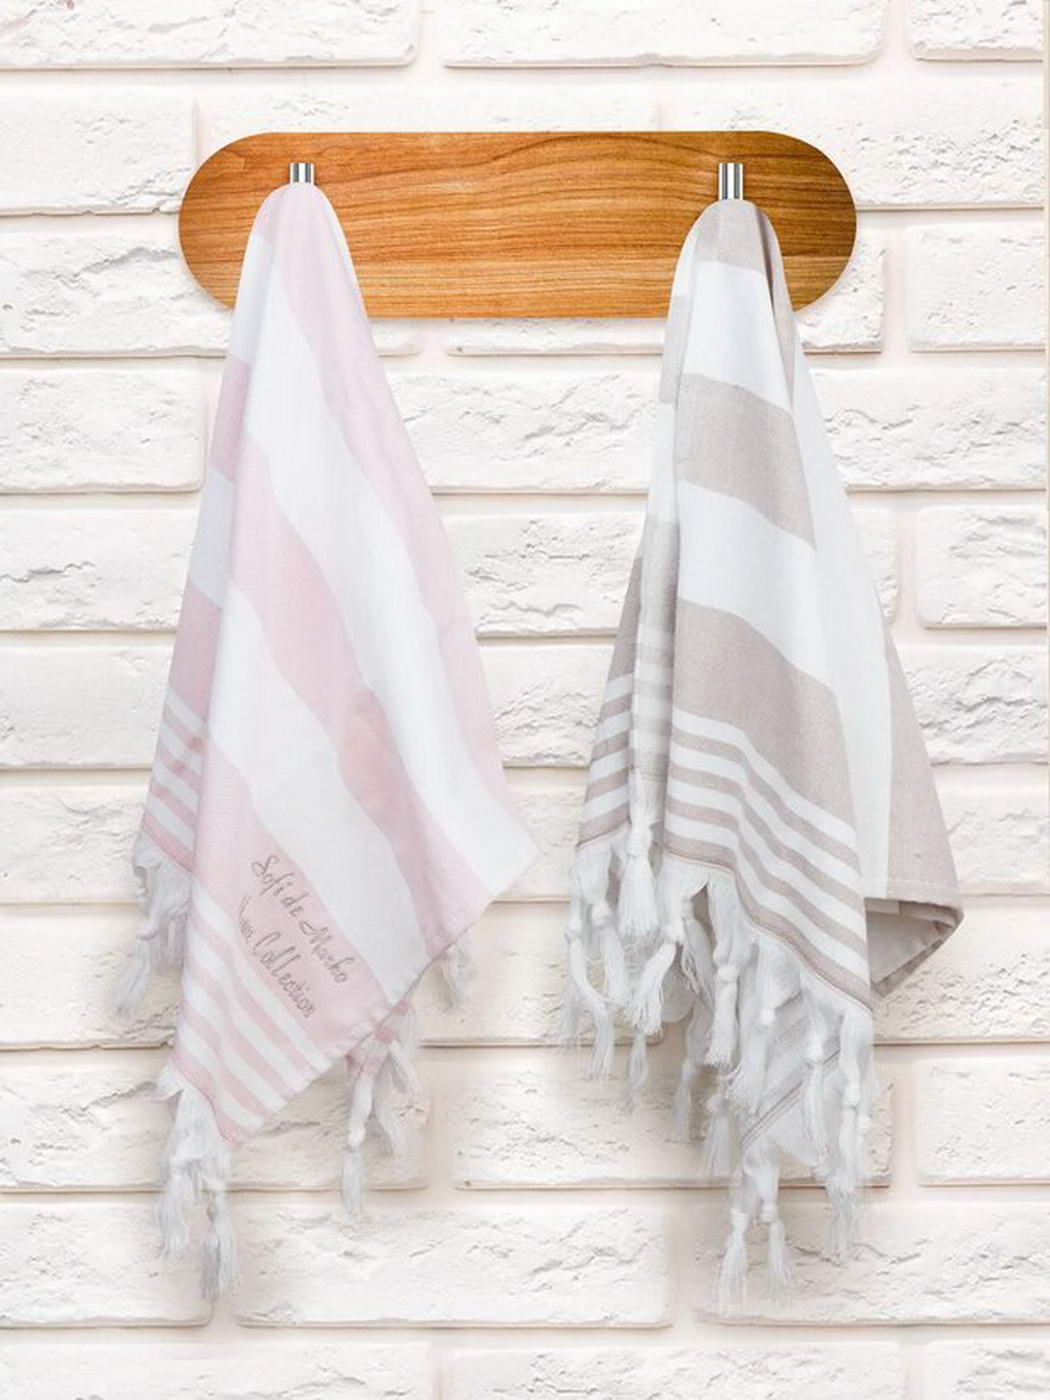 Кухонные полотенца, как подарок на праздник, торжество. Особенности состава для выбора материала. Подбор дизайна подарочного набора